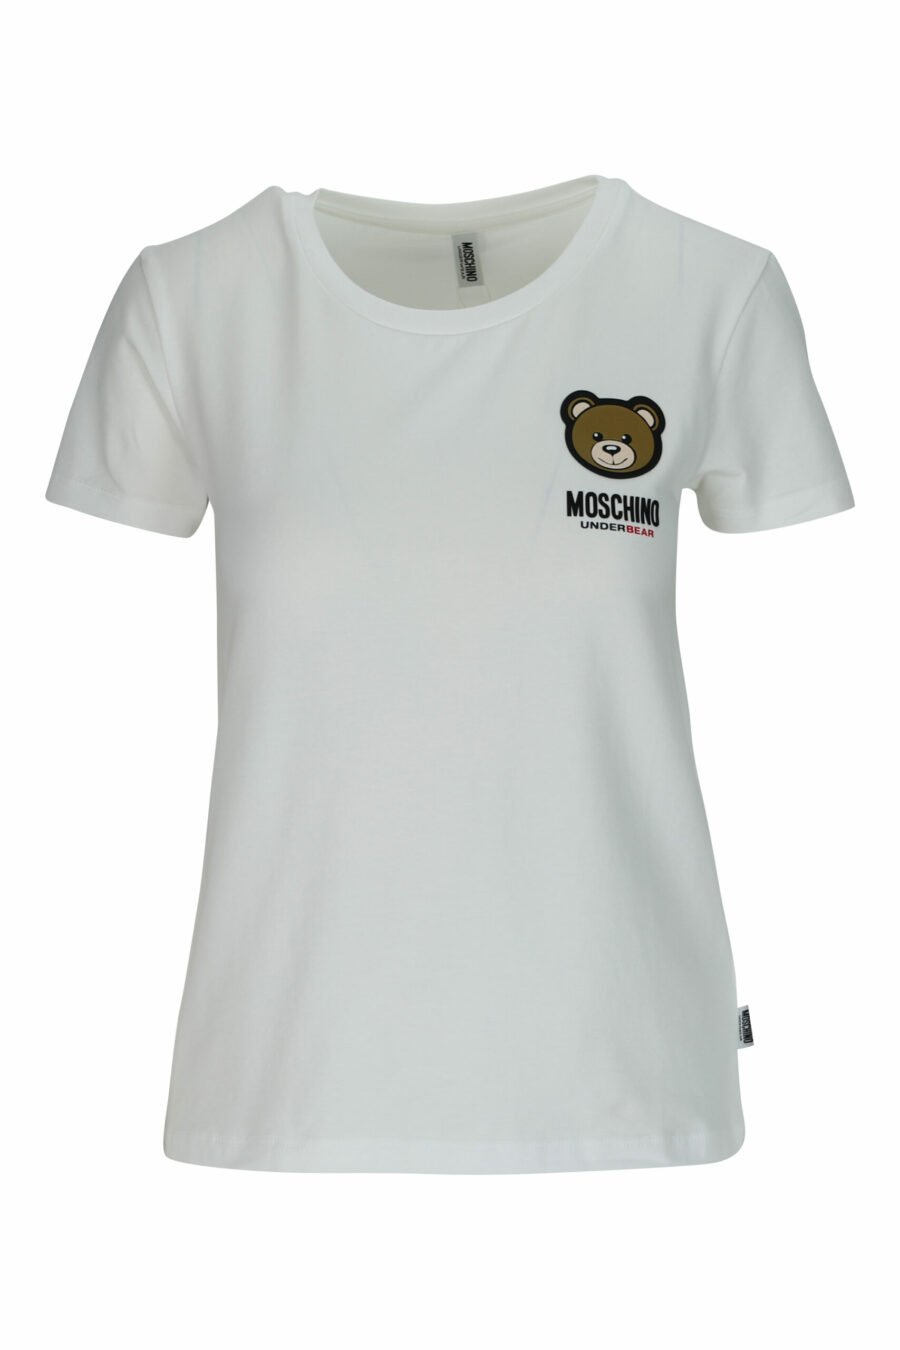 Camiseta blanca con logo oso "underbear" parche - 667113697321 scaled